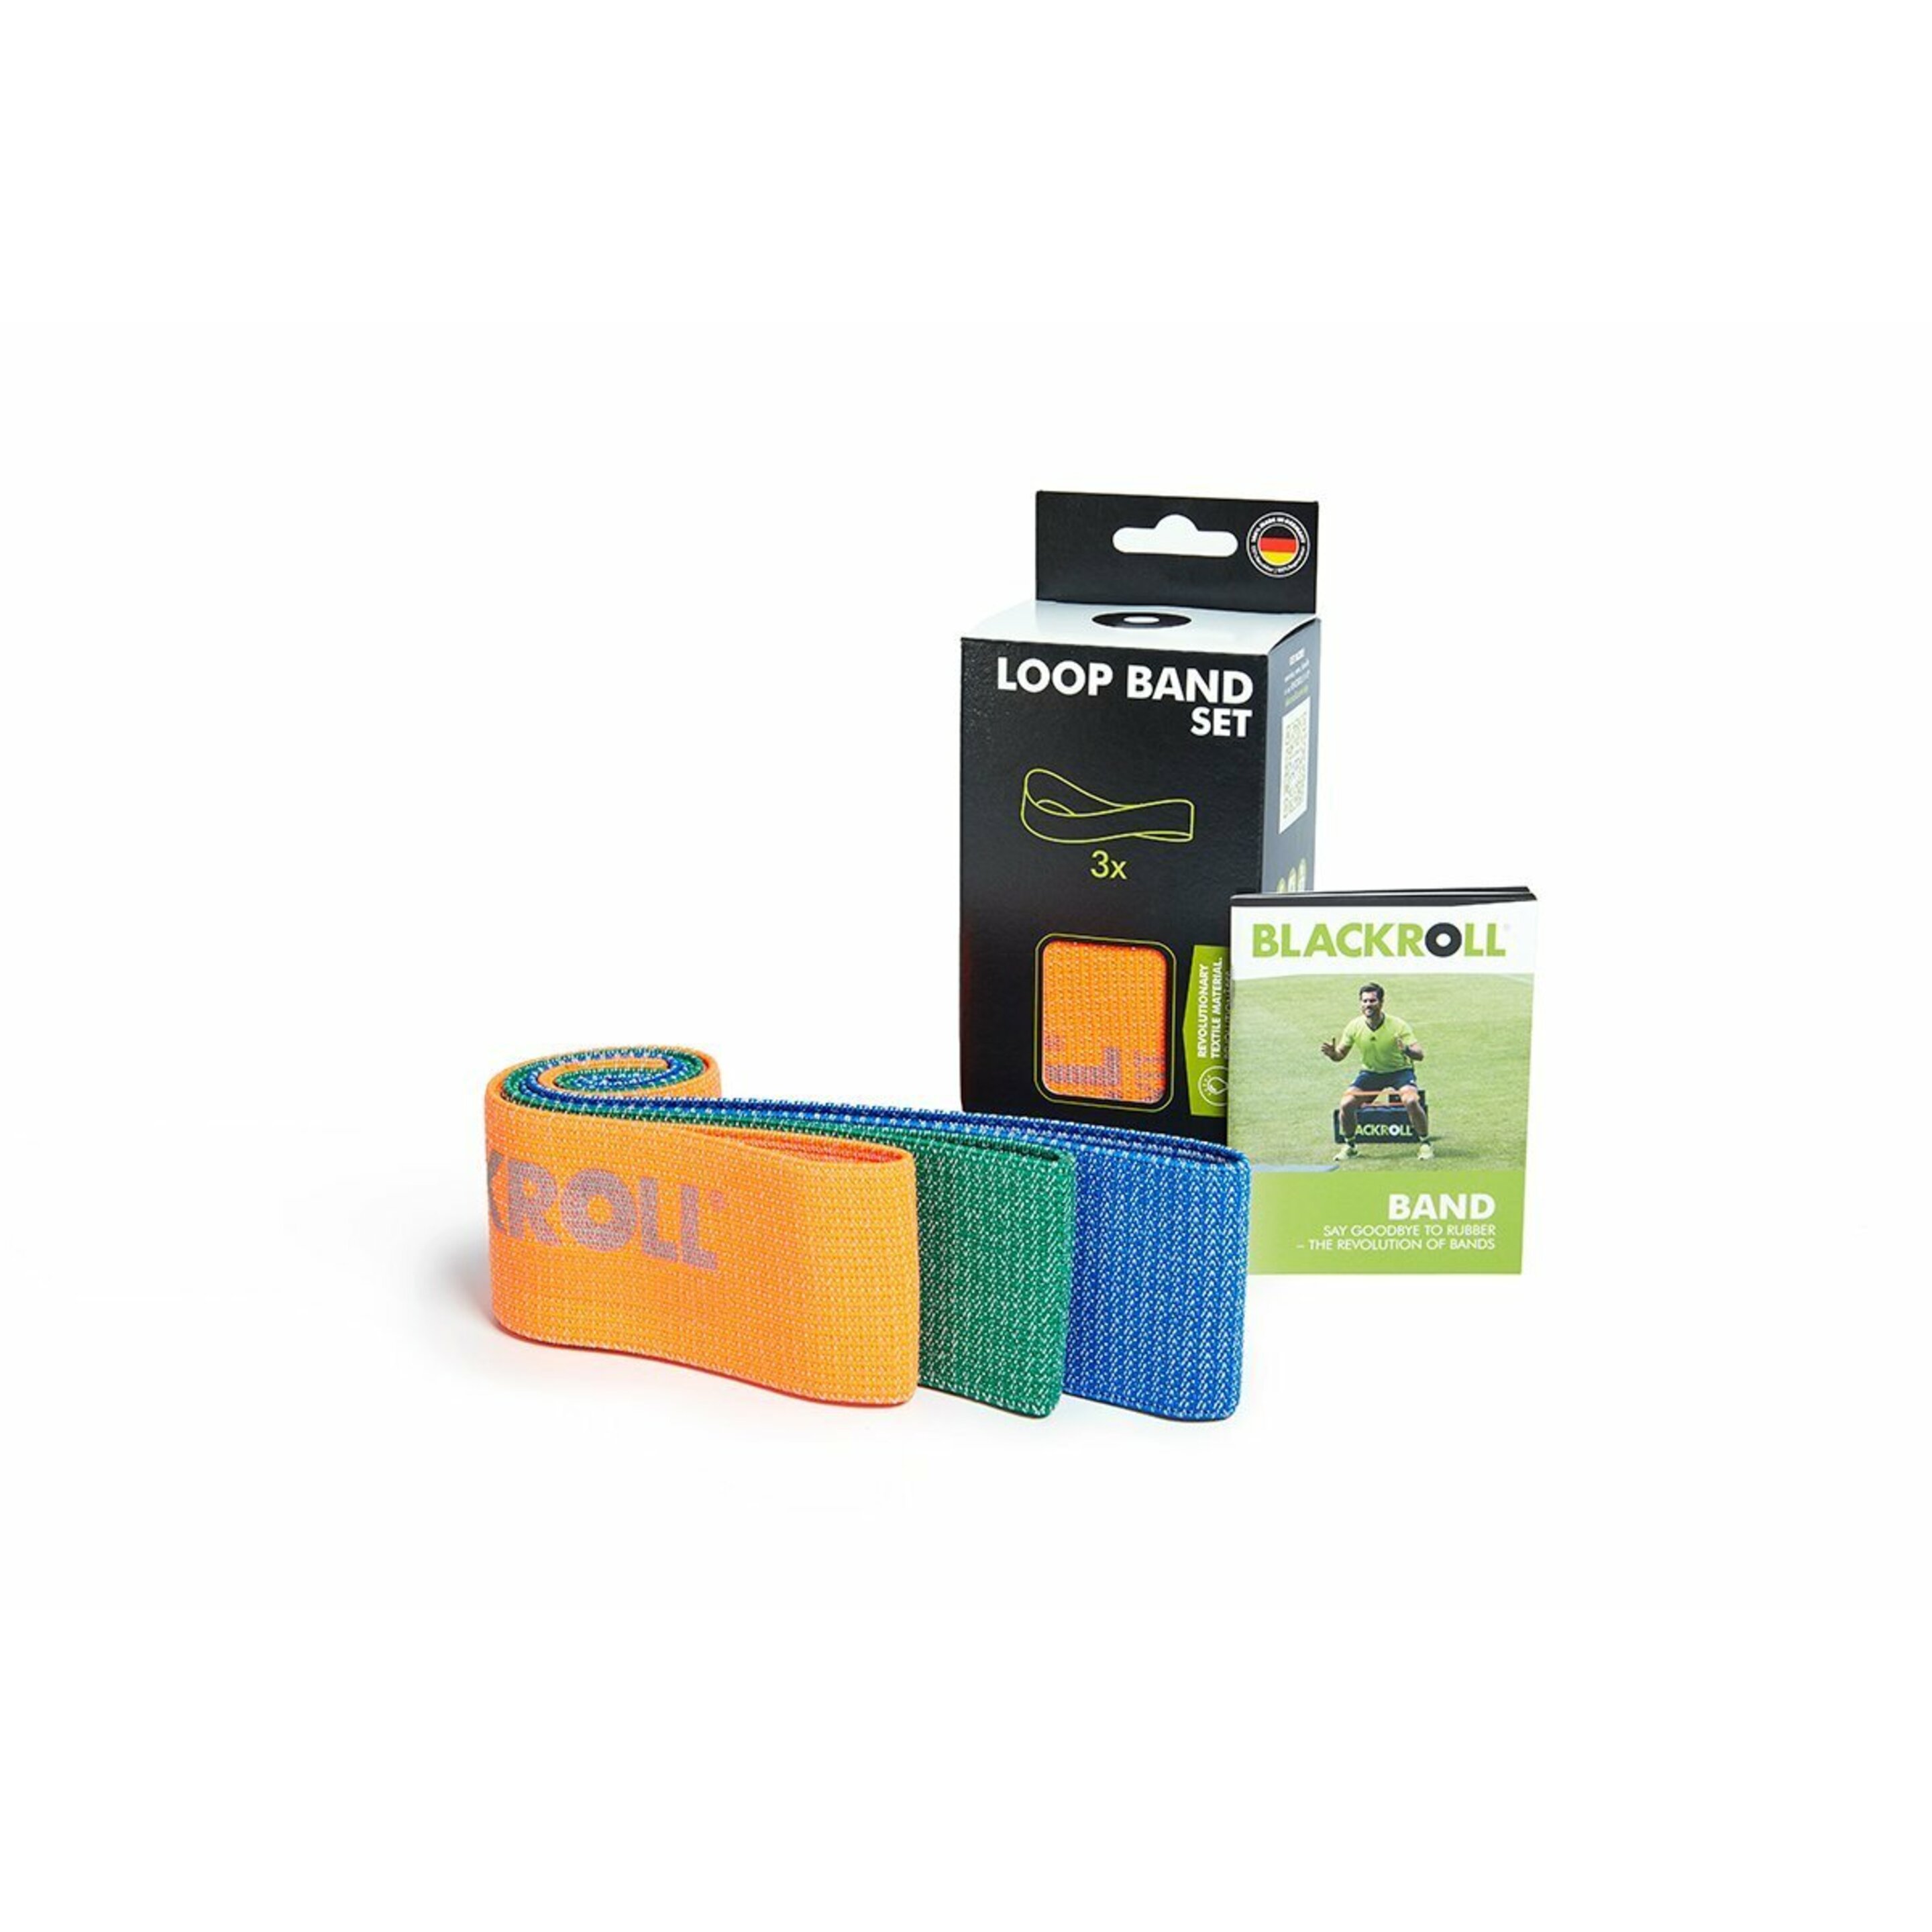 Bandas Elásticas De Material Textil Super-resistentes Blackroll® Loopband (30 Cm) - Naranja/Verde  MKP